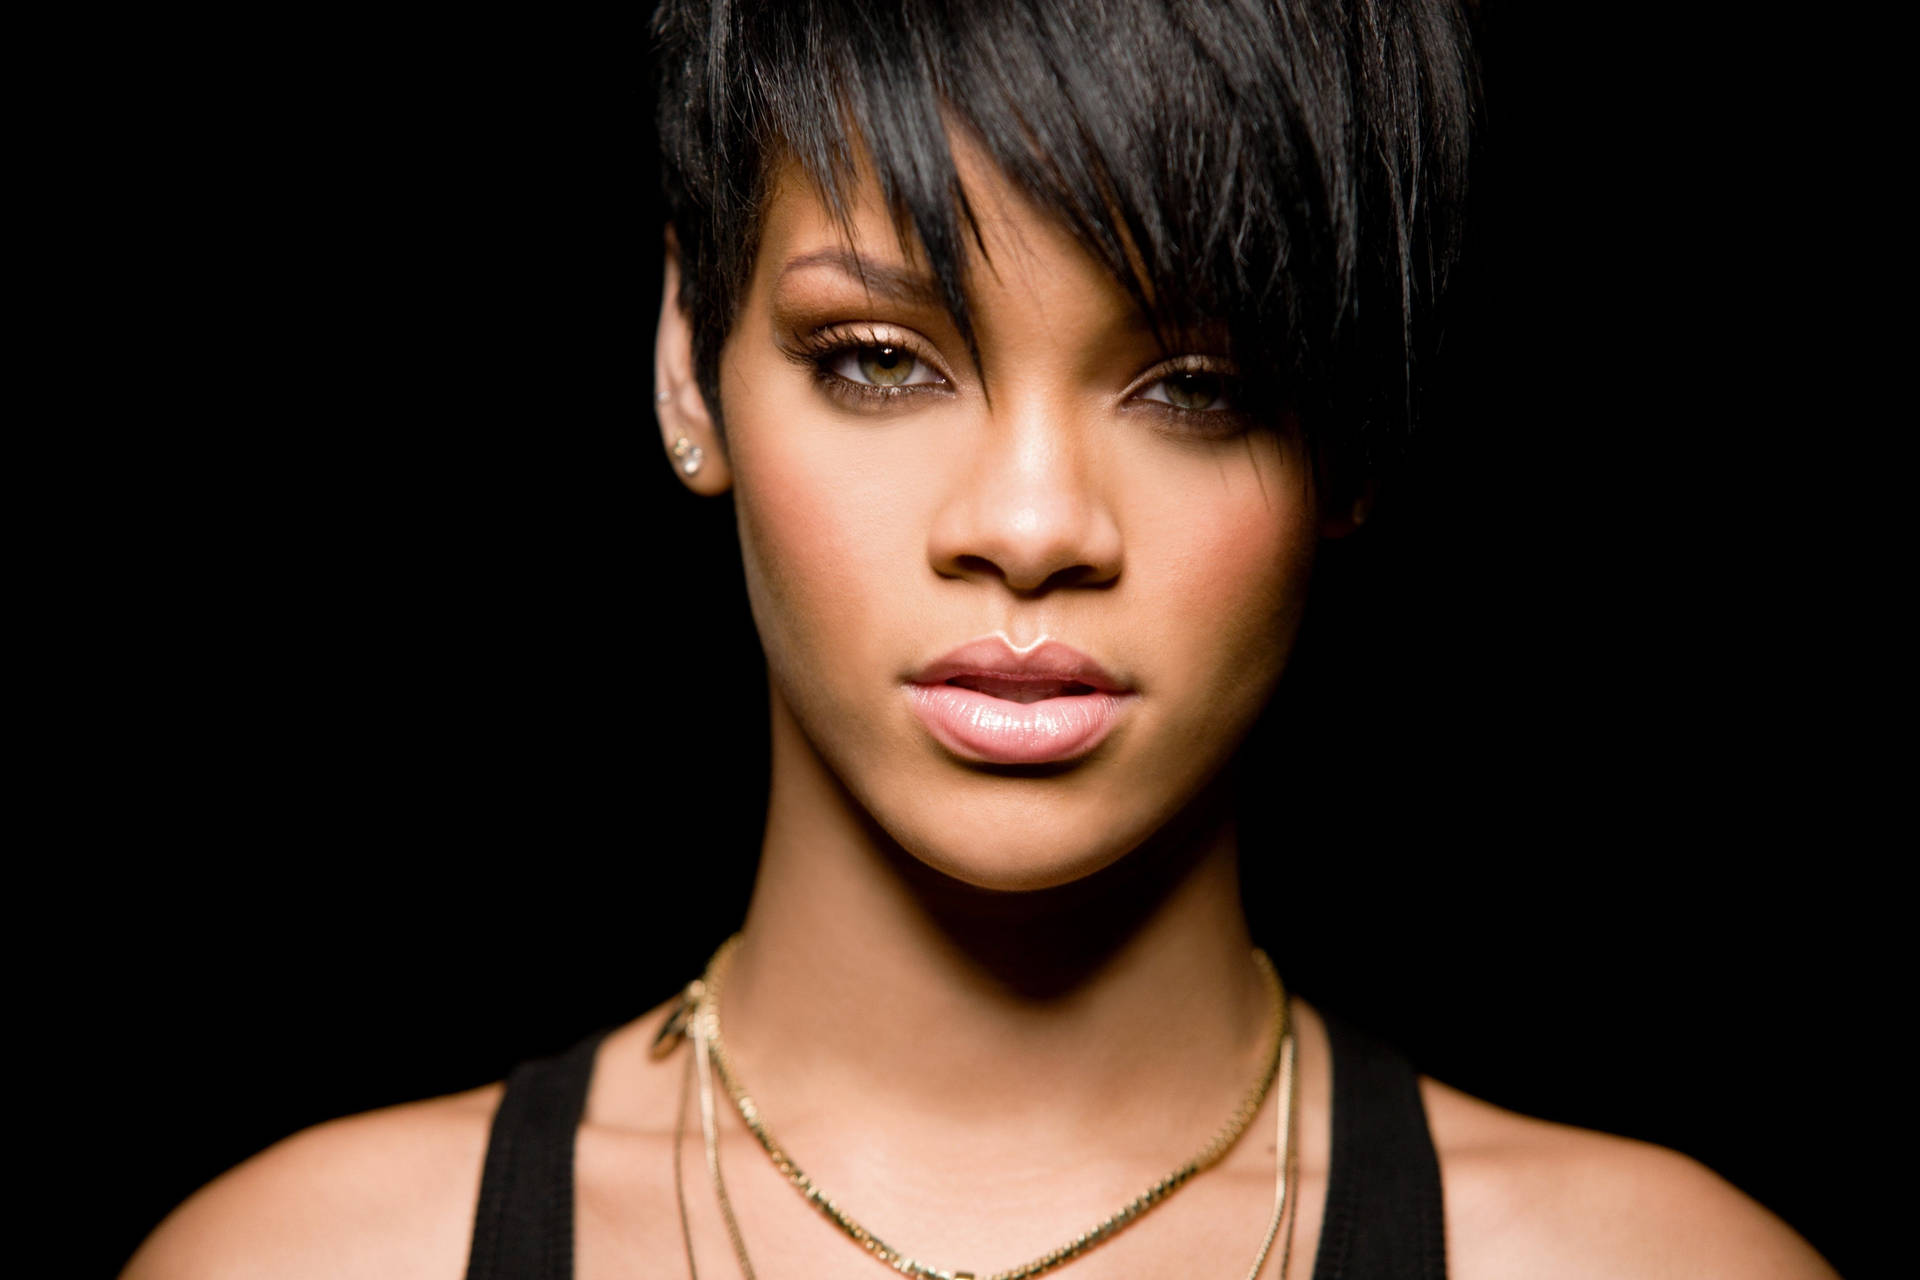 Rihanna 5616X3744 wallpaper